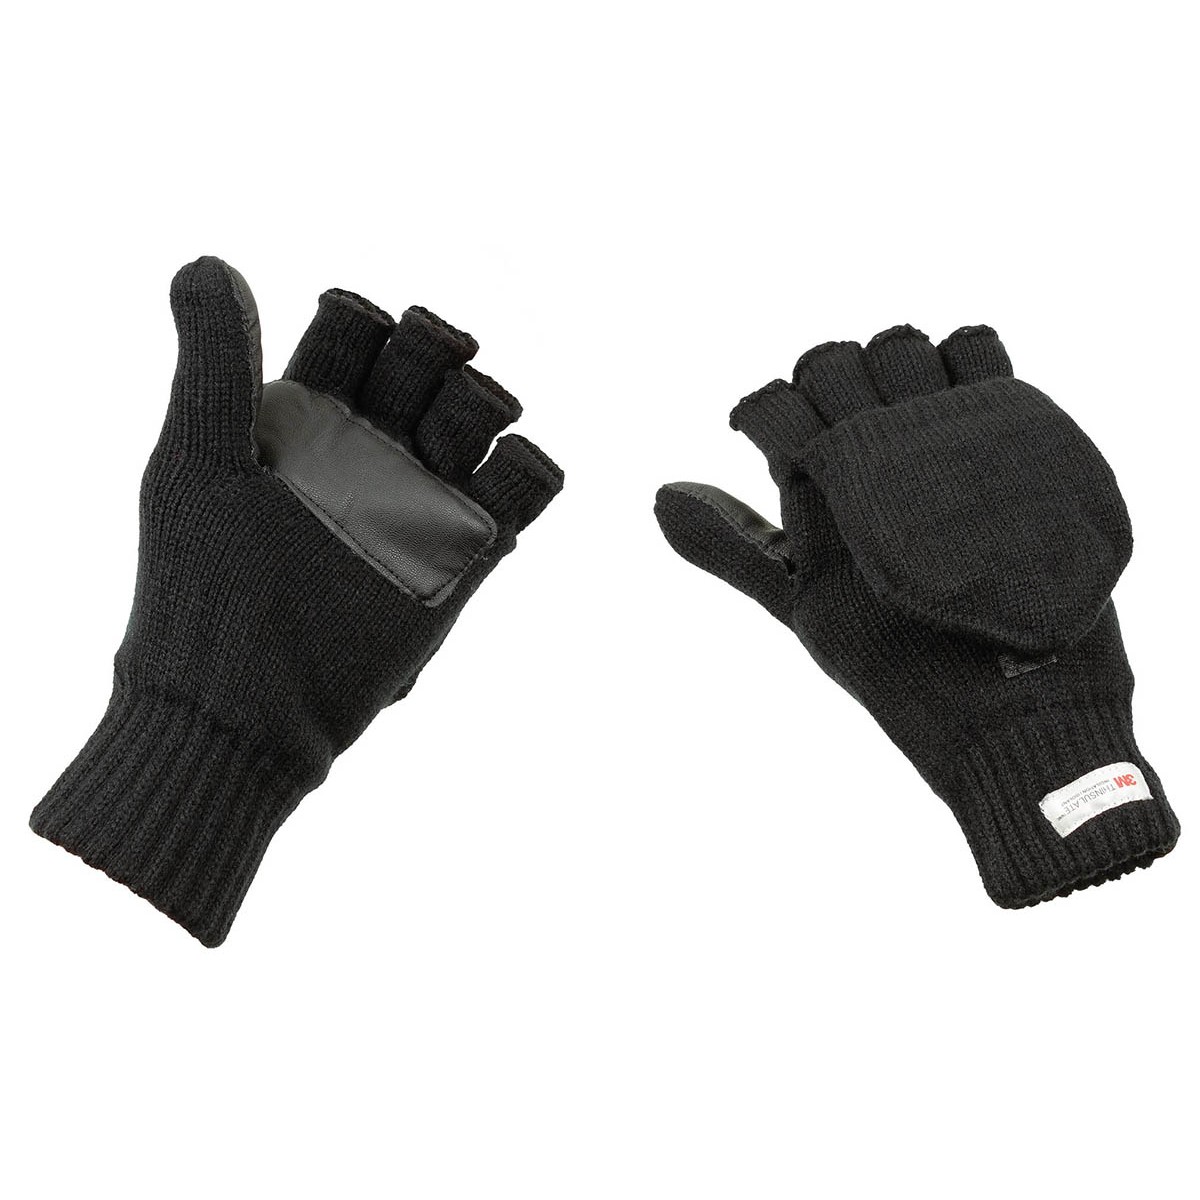 Pletené rukavice bez prstů s podšívkou MFH Thinsulate - černé, XL